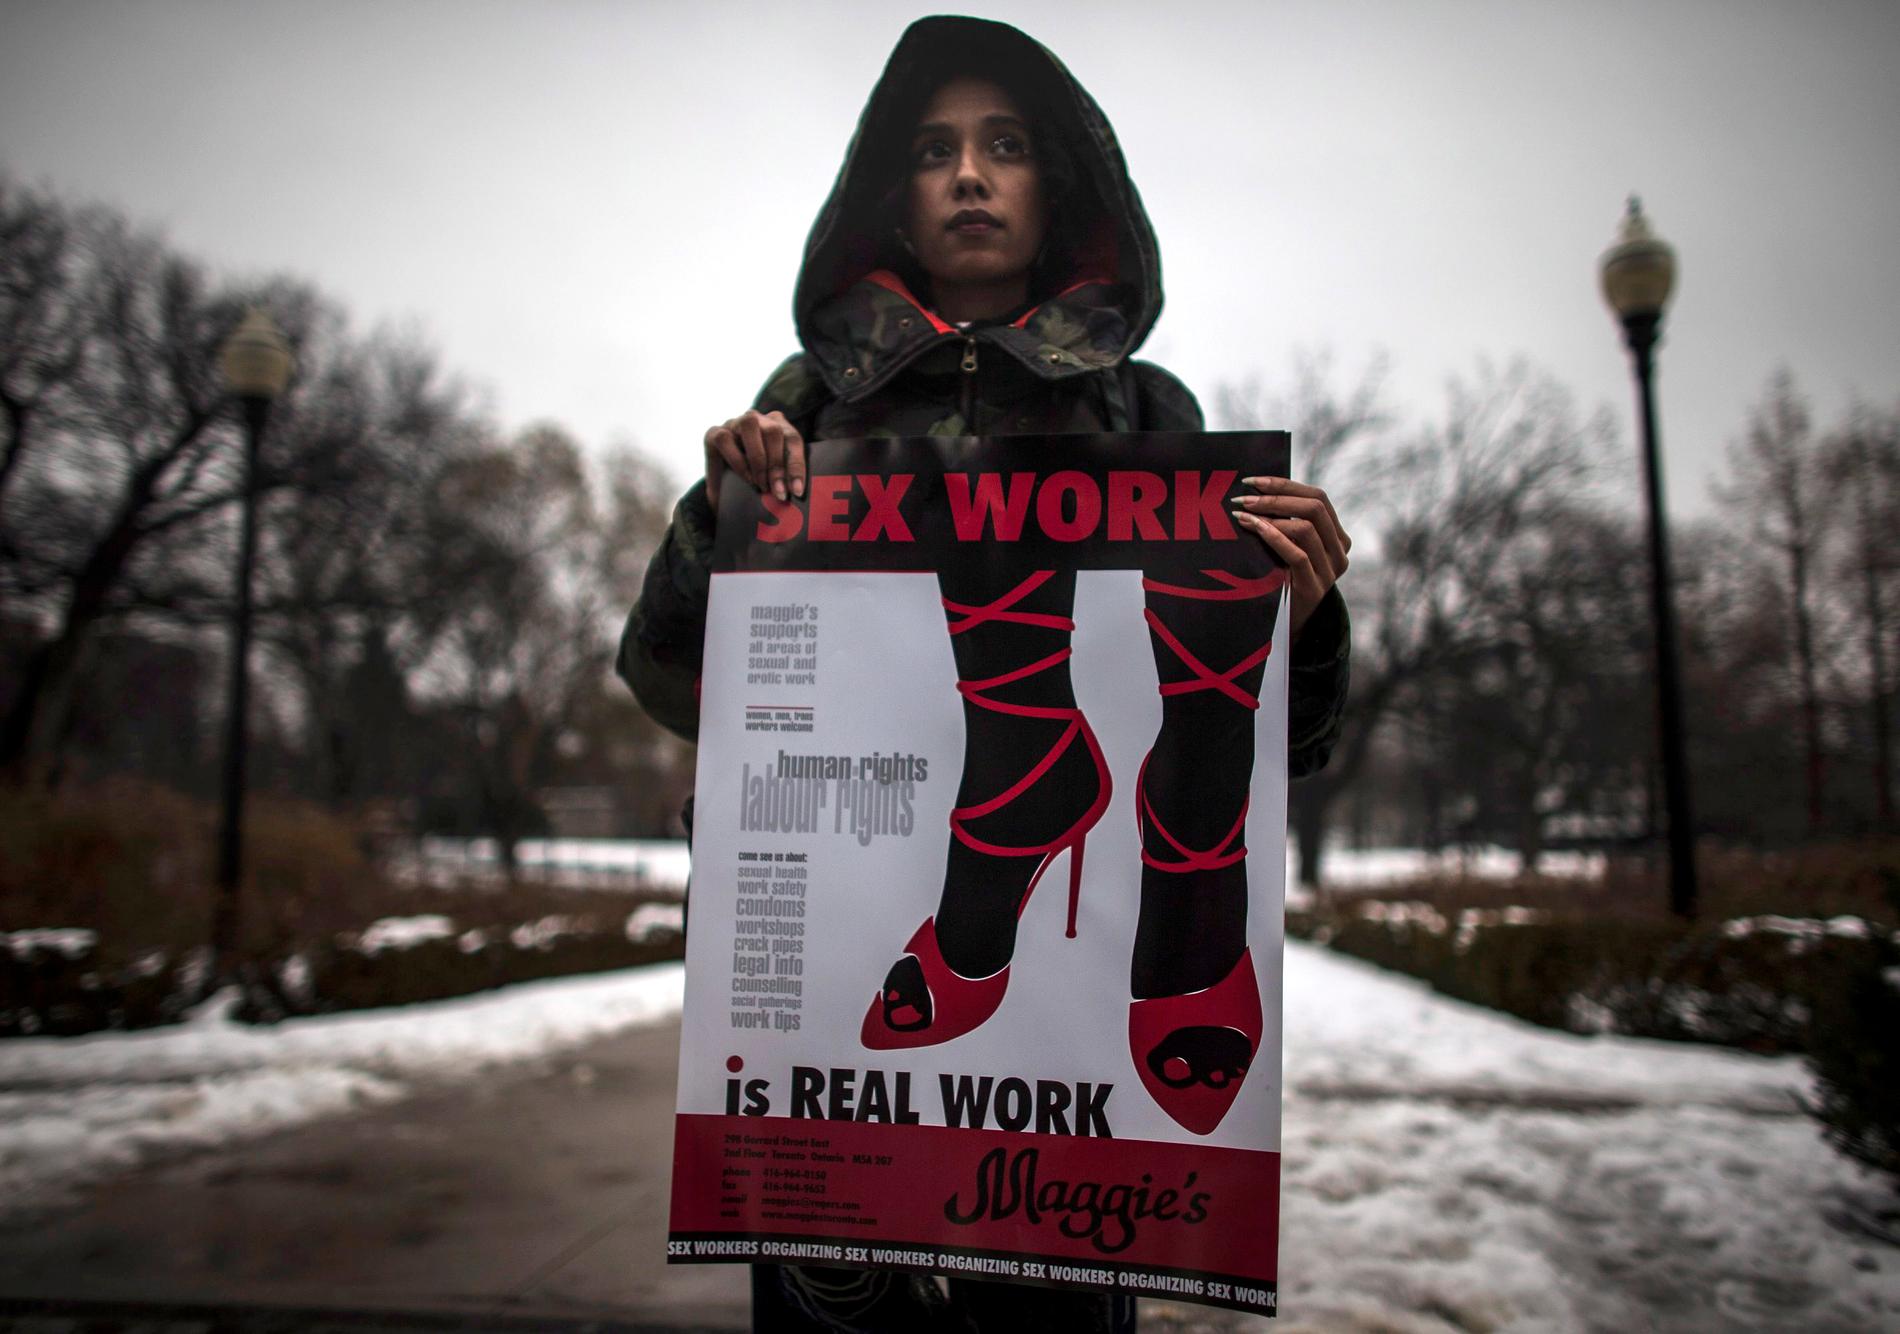 Överallt i världen kräver sexarbetare skydd och rättigheter, menar Petra Östergren. Här protesterar en kvinna i Canada för legaliserad prostitution.